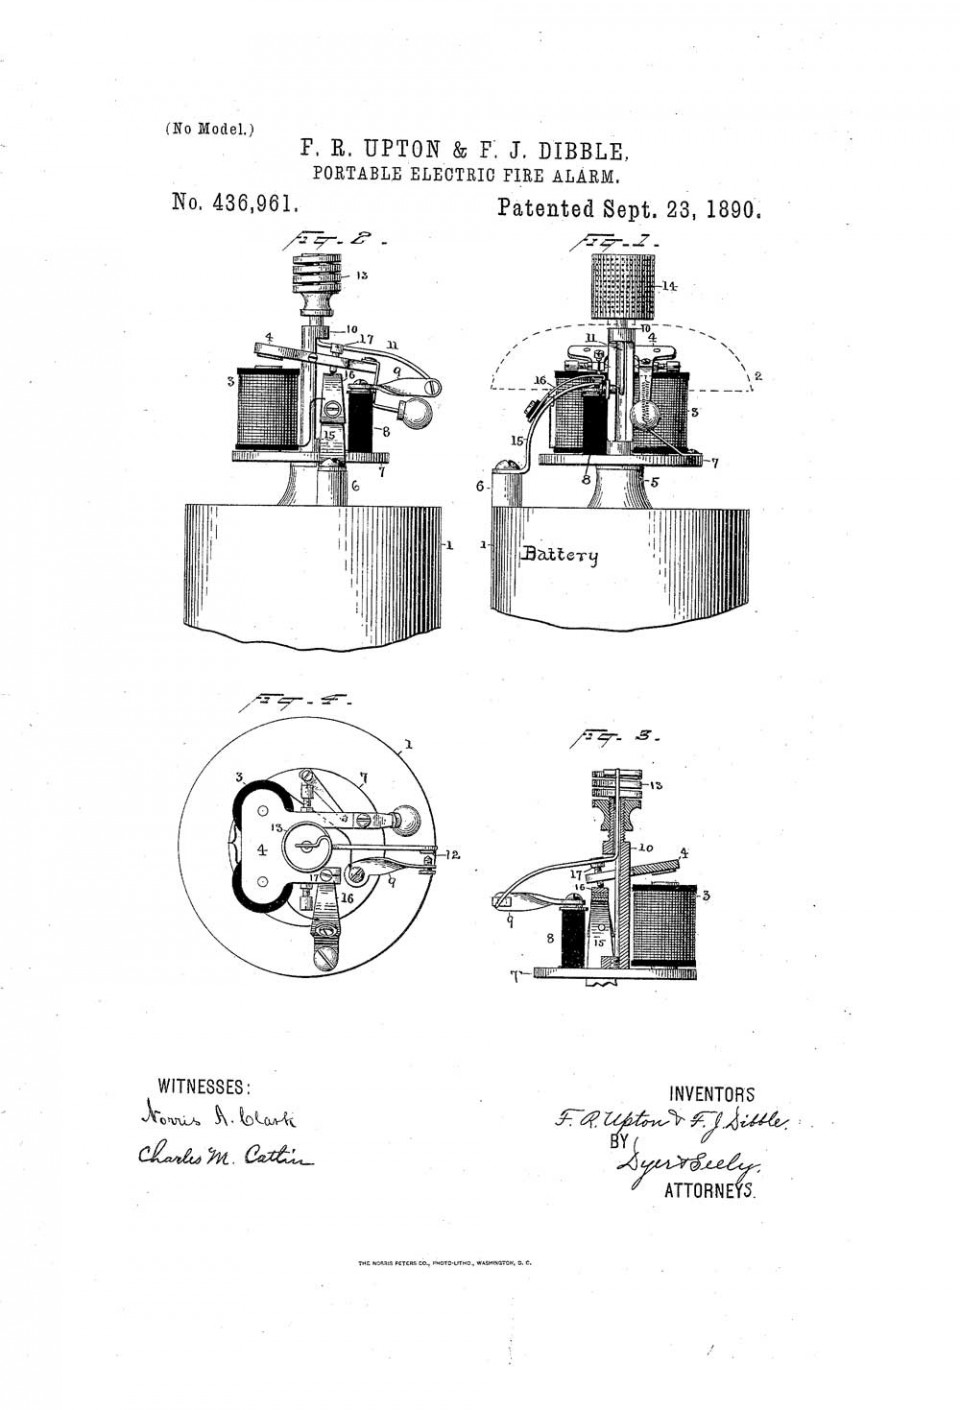 Рисунок автоматического пожарного извещателя из патента Аптона и Диббла, США, 1890 год